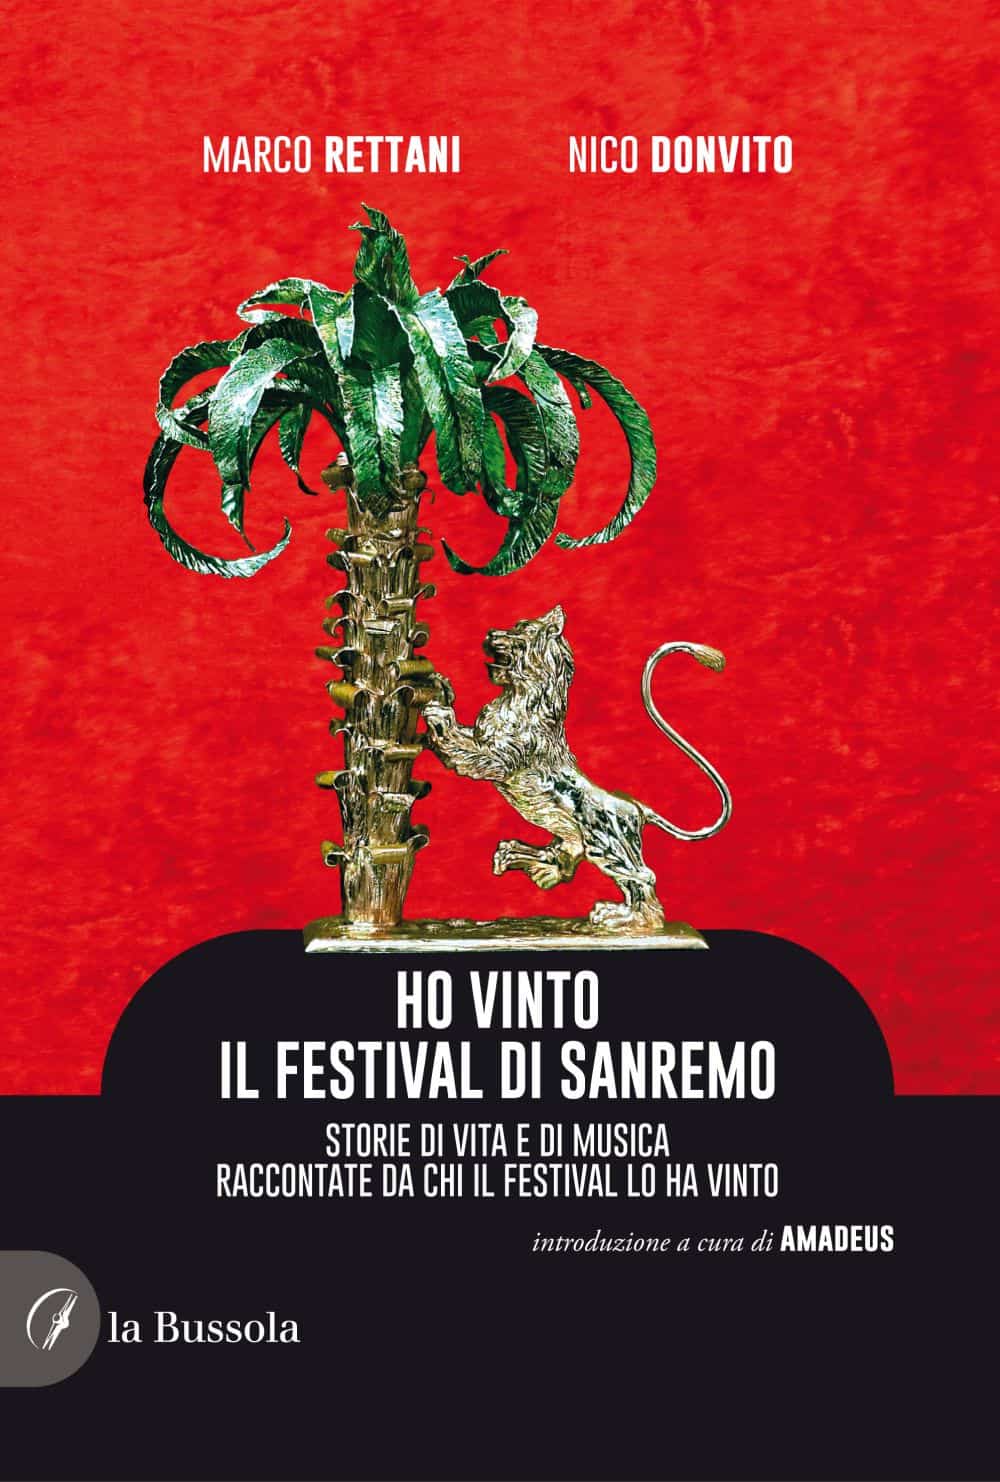 Marco Rettani e Nico Donvito “Ho vinto il Festival di Sanremo” 